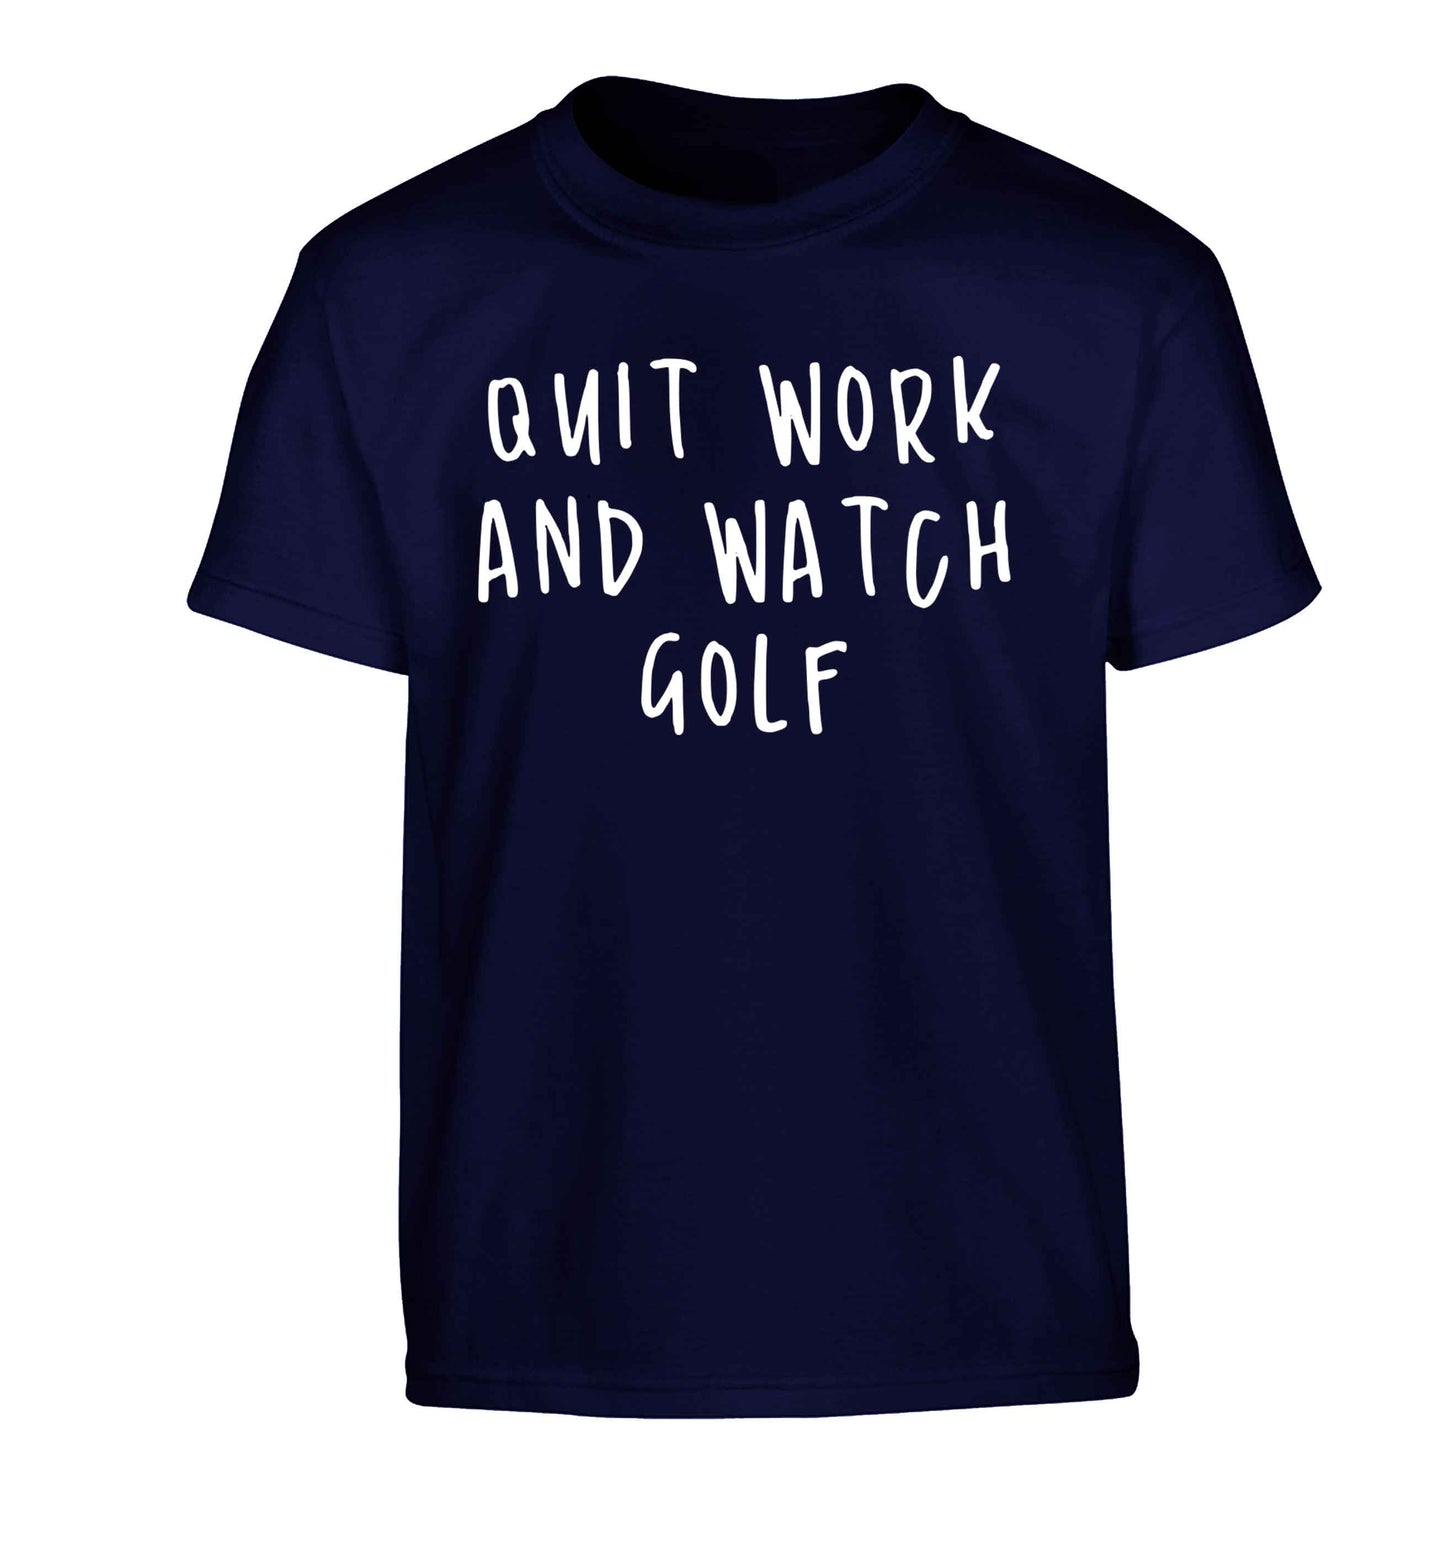 Quit work and watch golf Children's navy Tshirt 12-13 Years